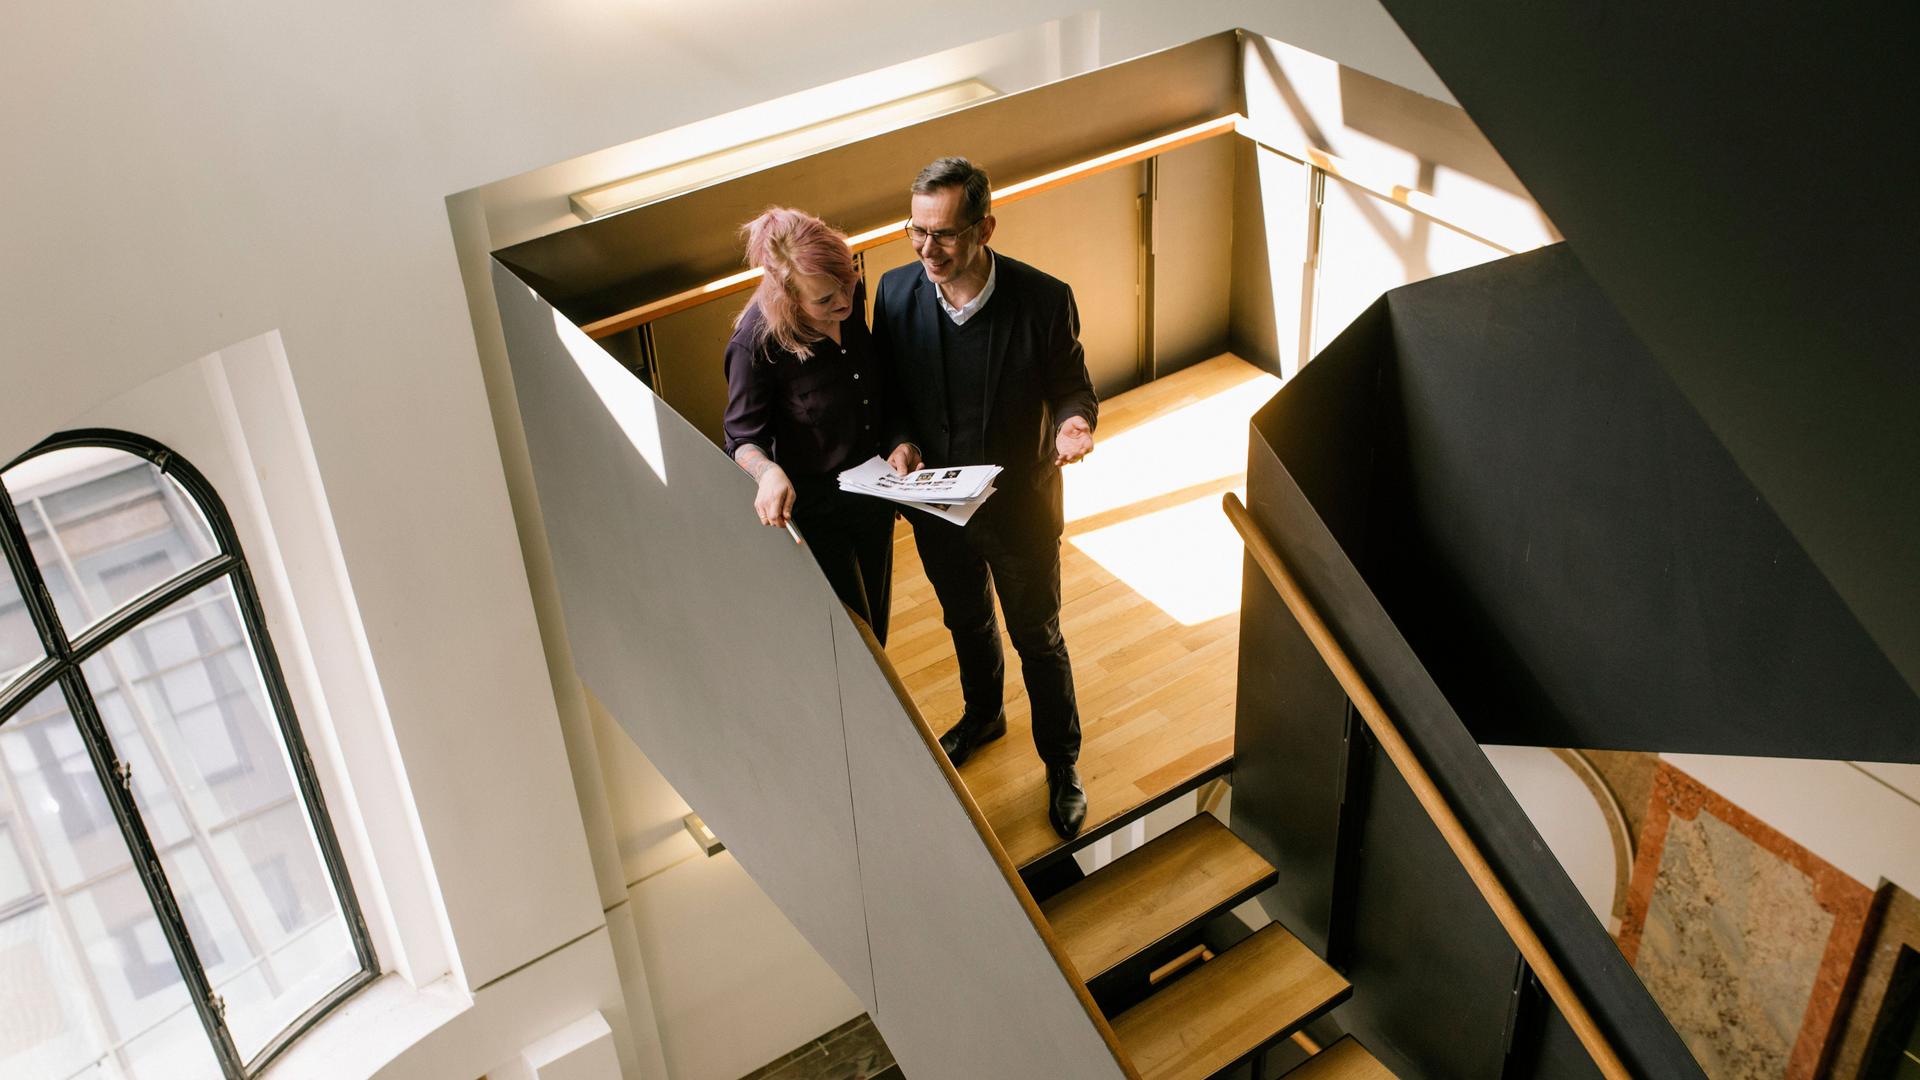 Ein Mann und eine Frau unterhalten sich in einem modernen Treppenhaus auf einer Holztreppe und gucken dabei auf Dokumente.